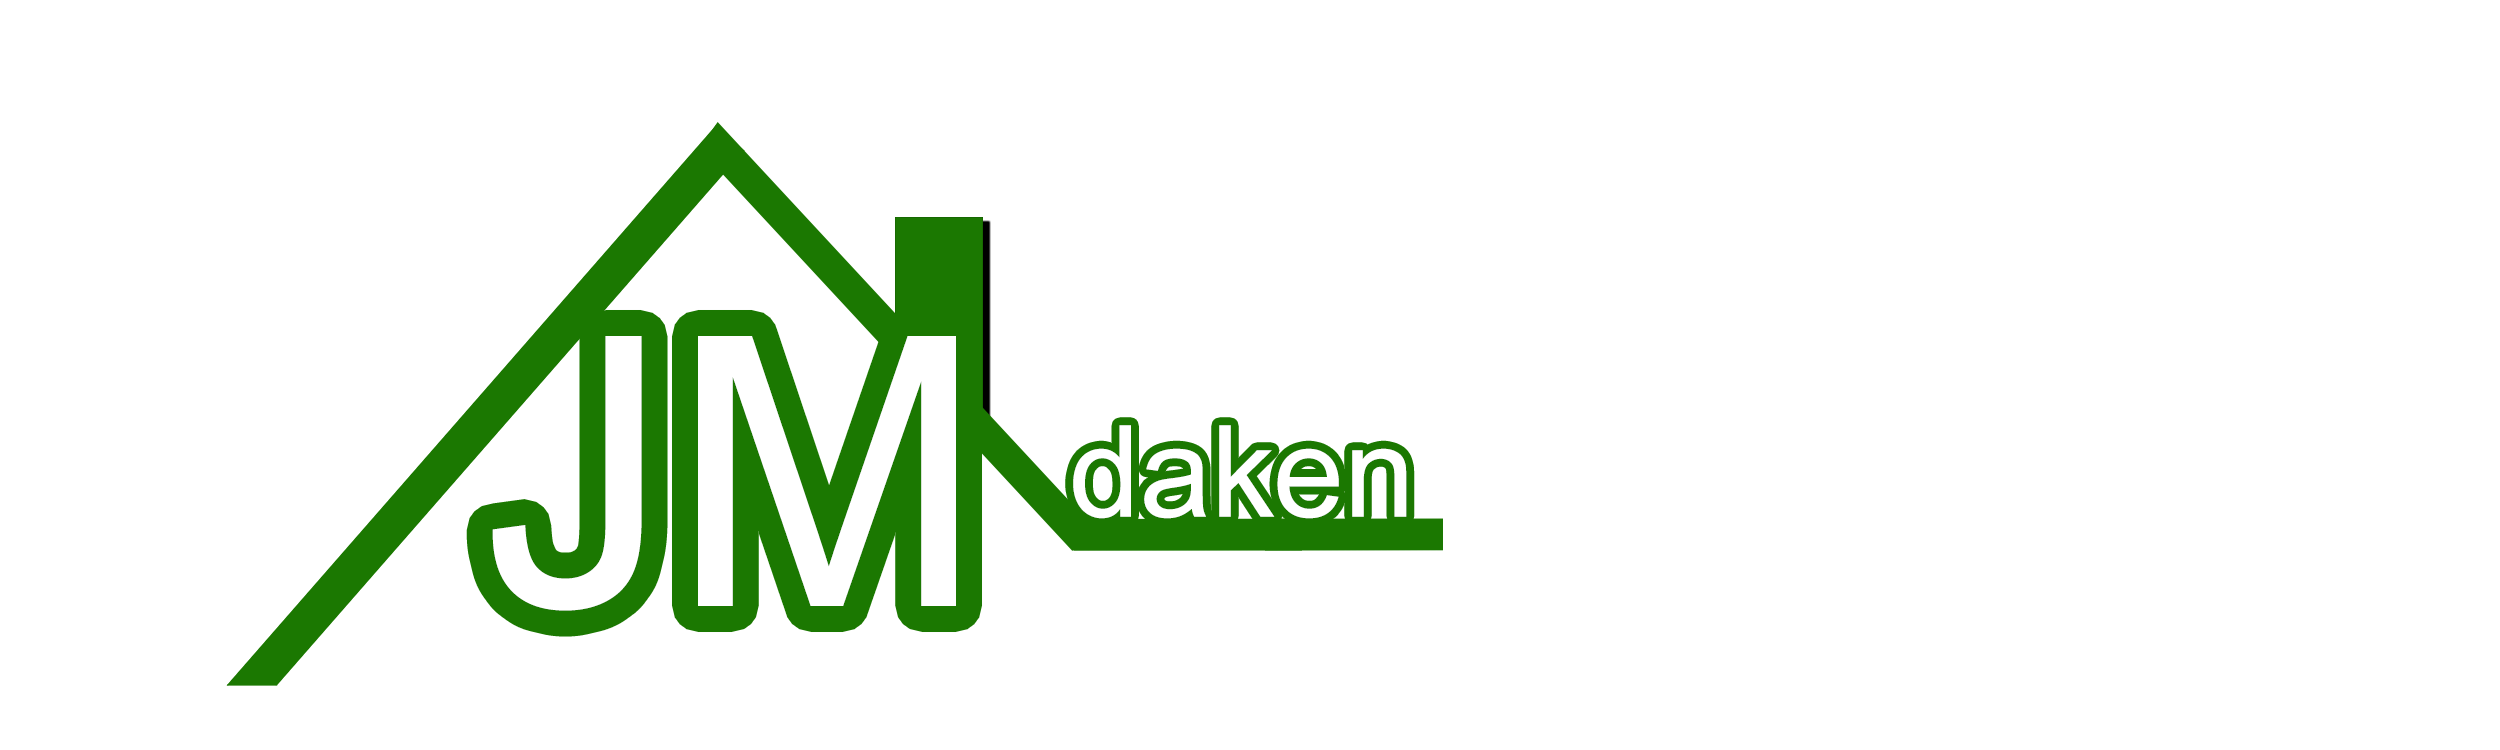 logo2klein-1